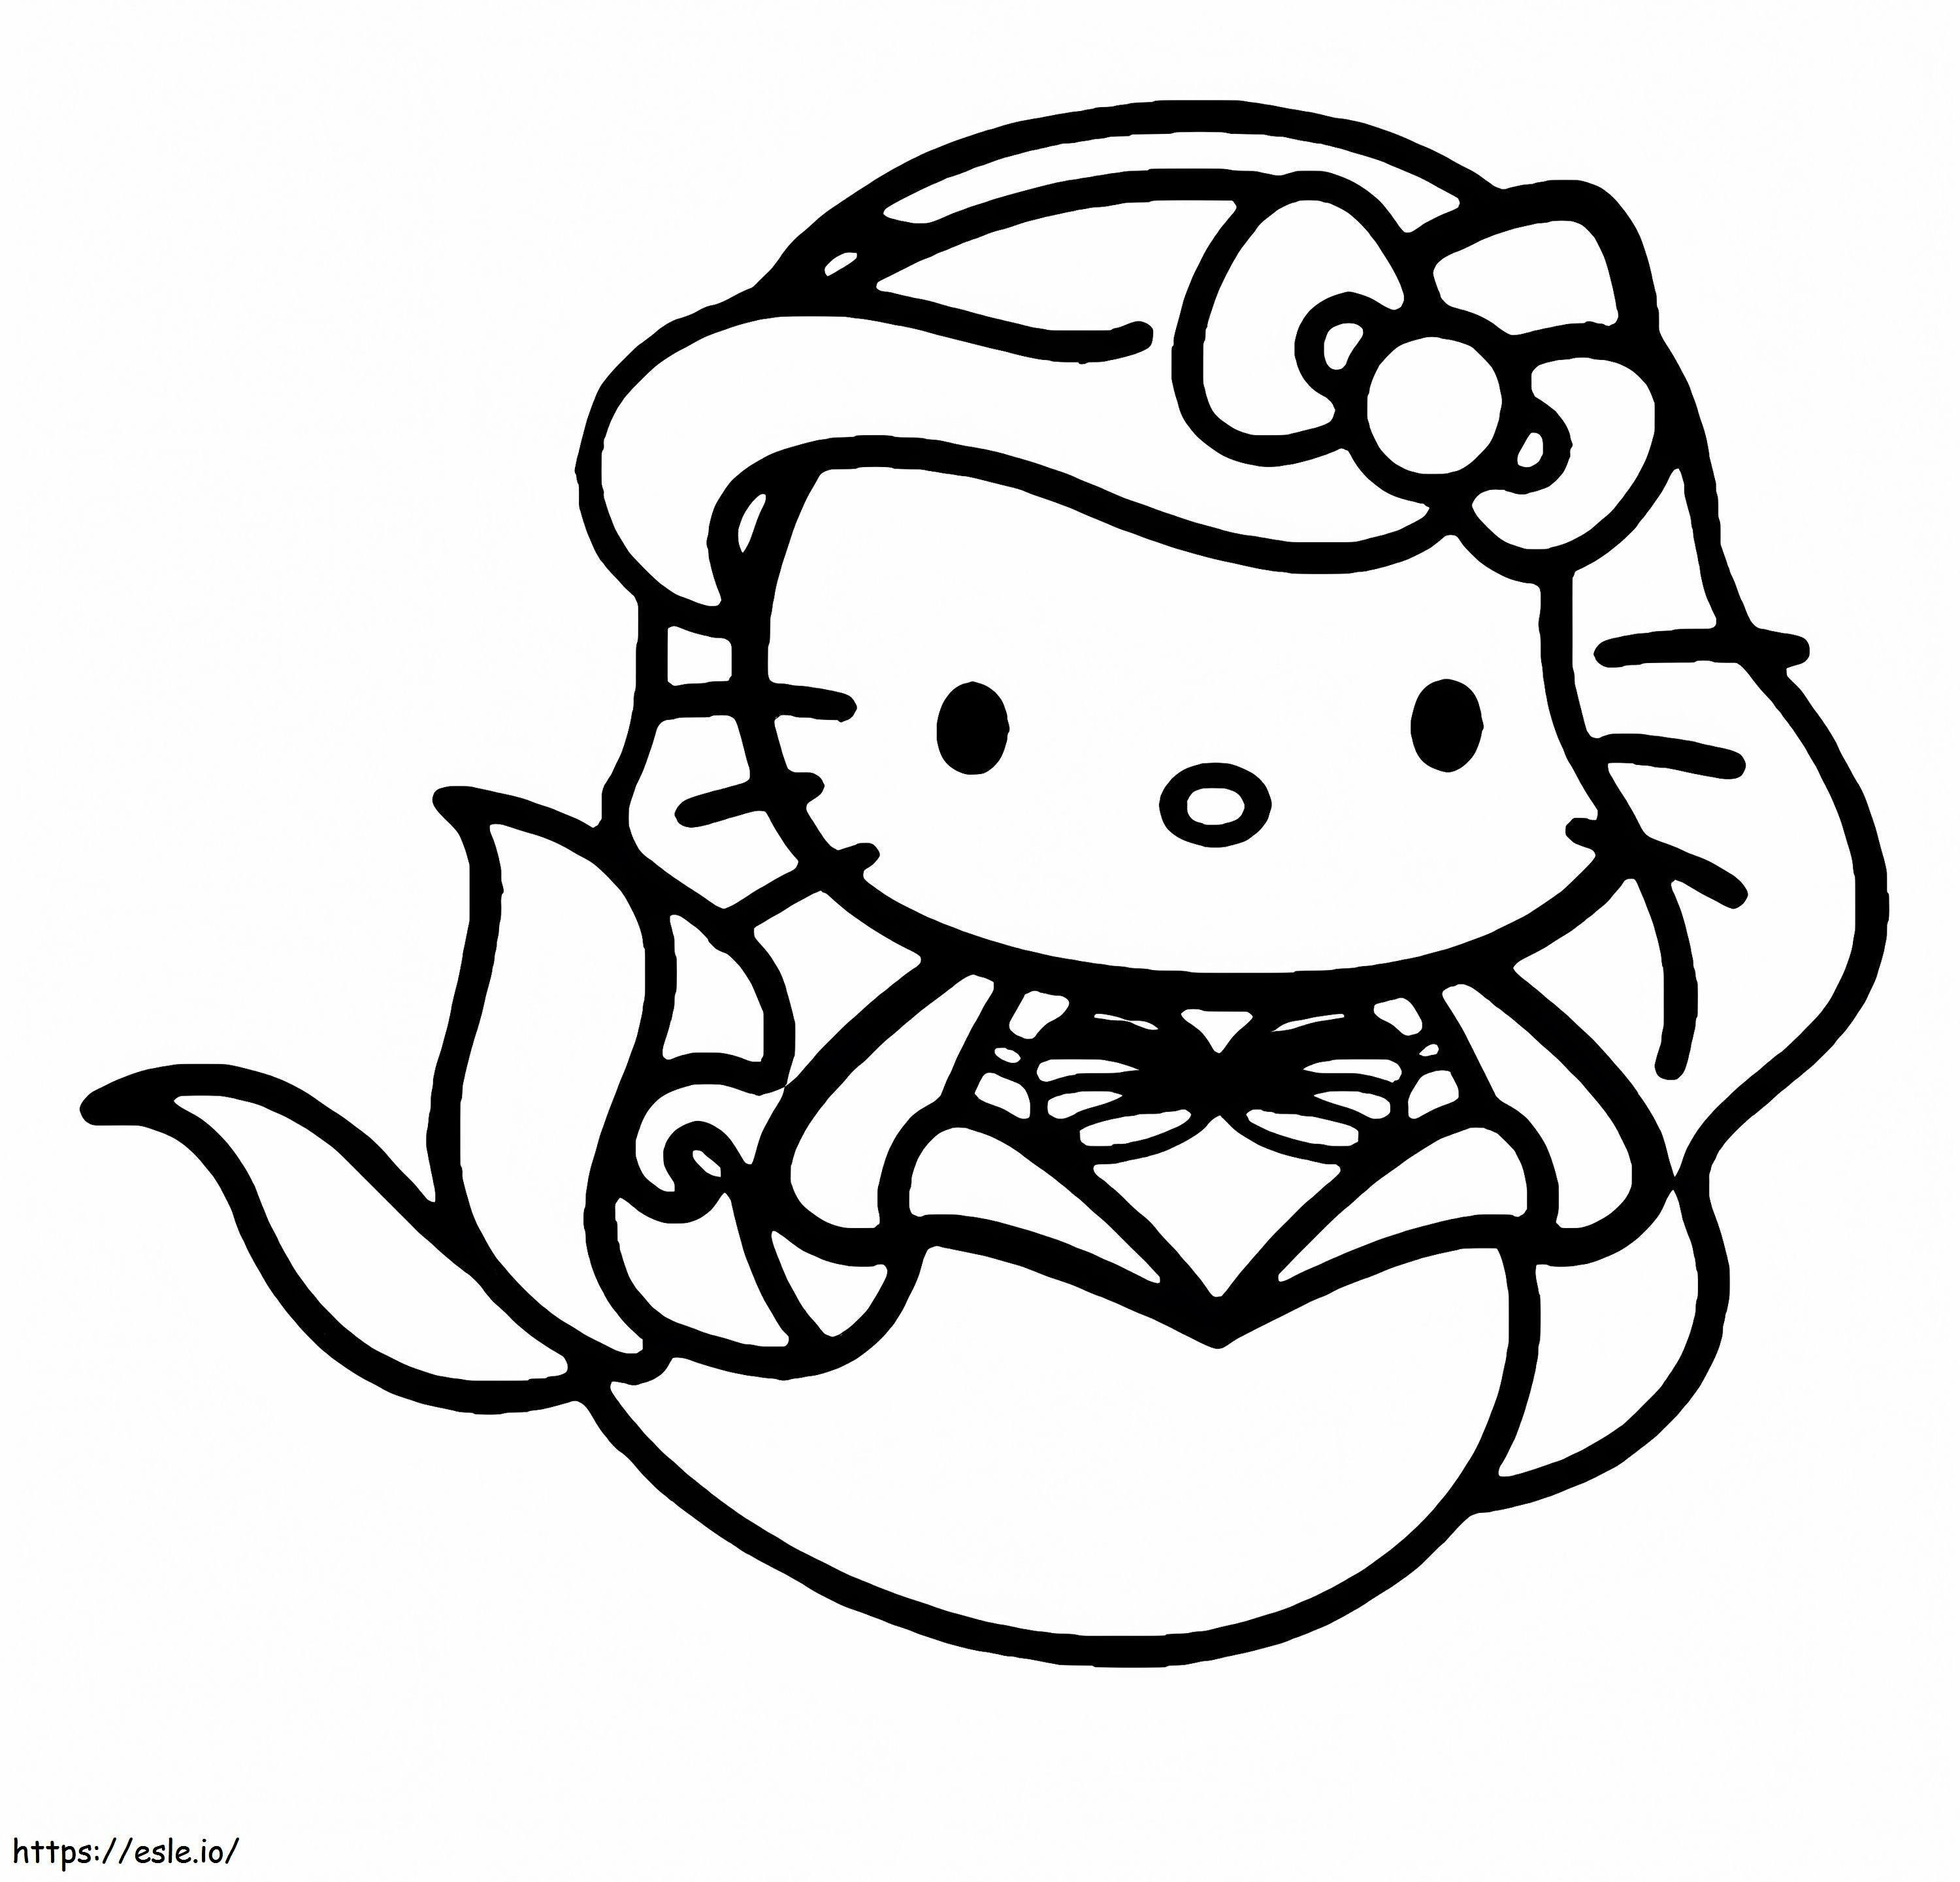 Coloriage Dessin animé Hello Kitty Sirène à imprimer dessin